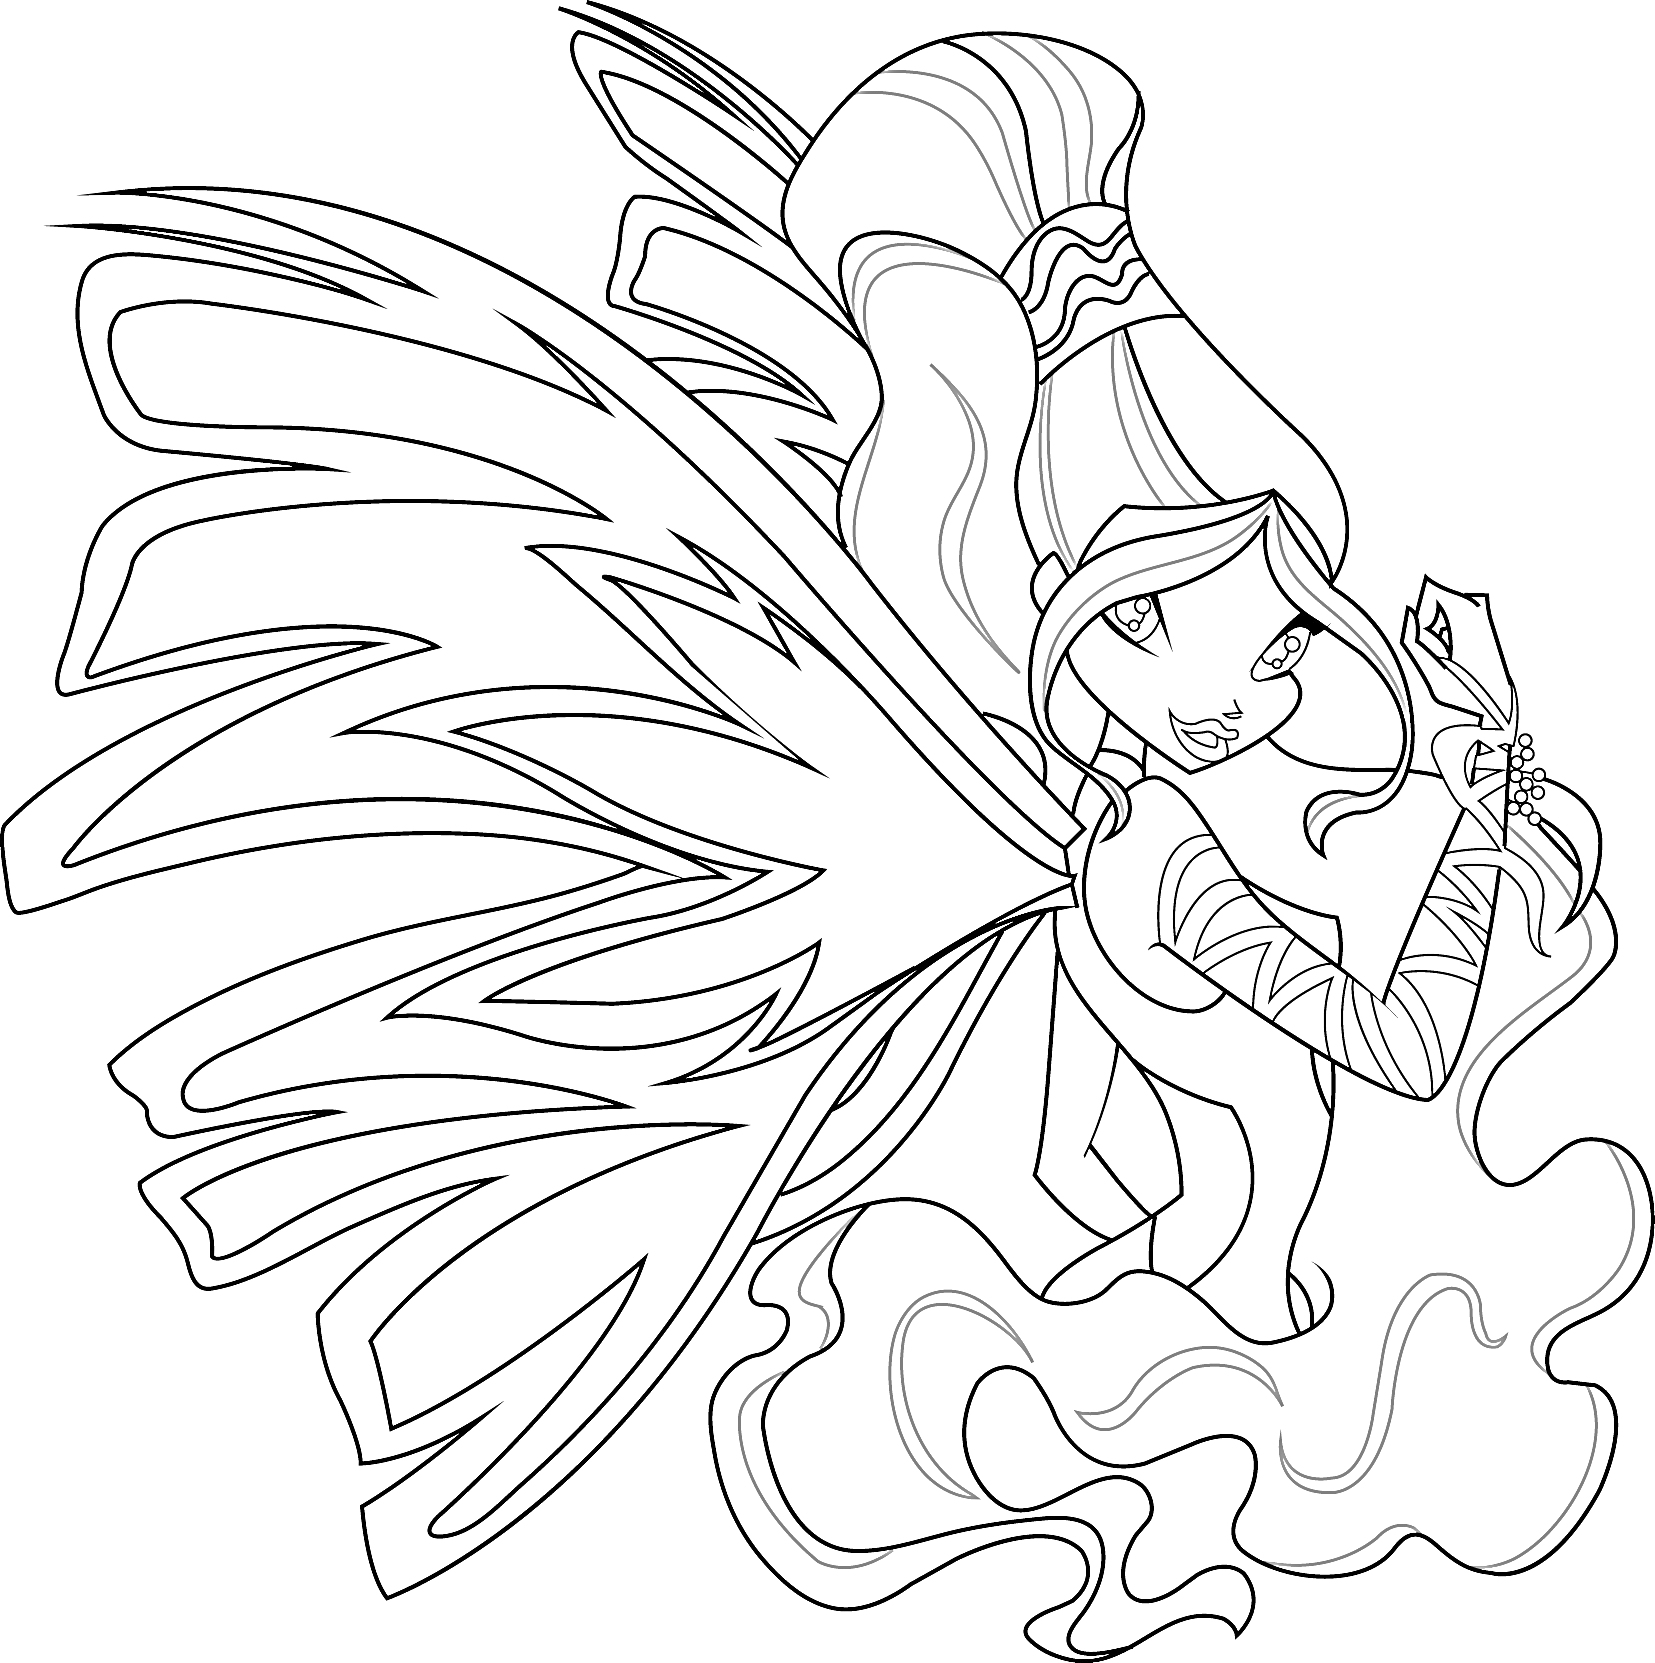 Фея Винкс Сиреникс с длинными волосами, крыльями и в платье с узорами, позирует в движении под водой